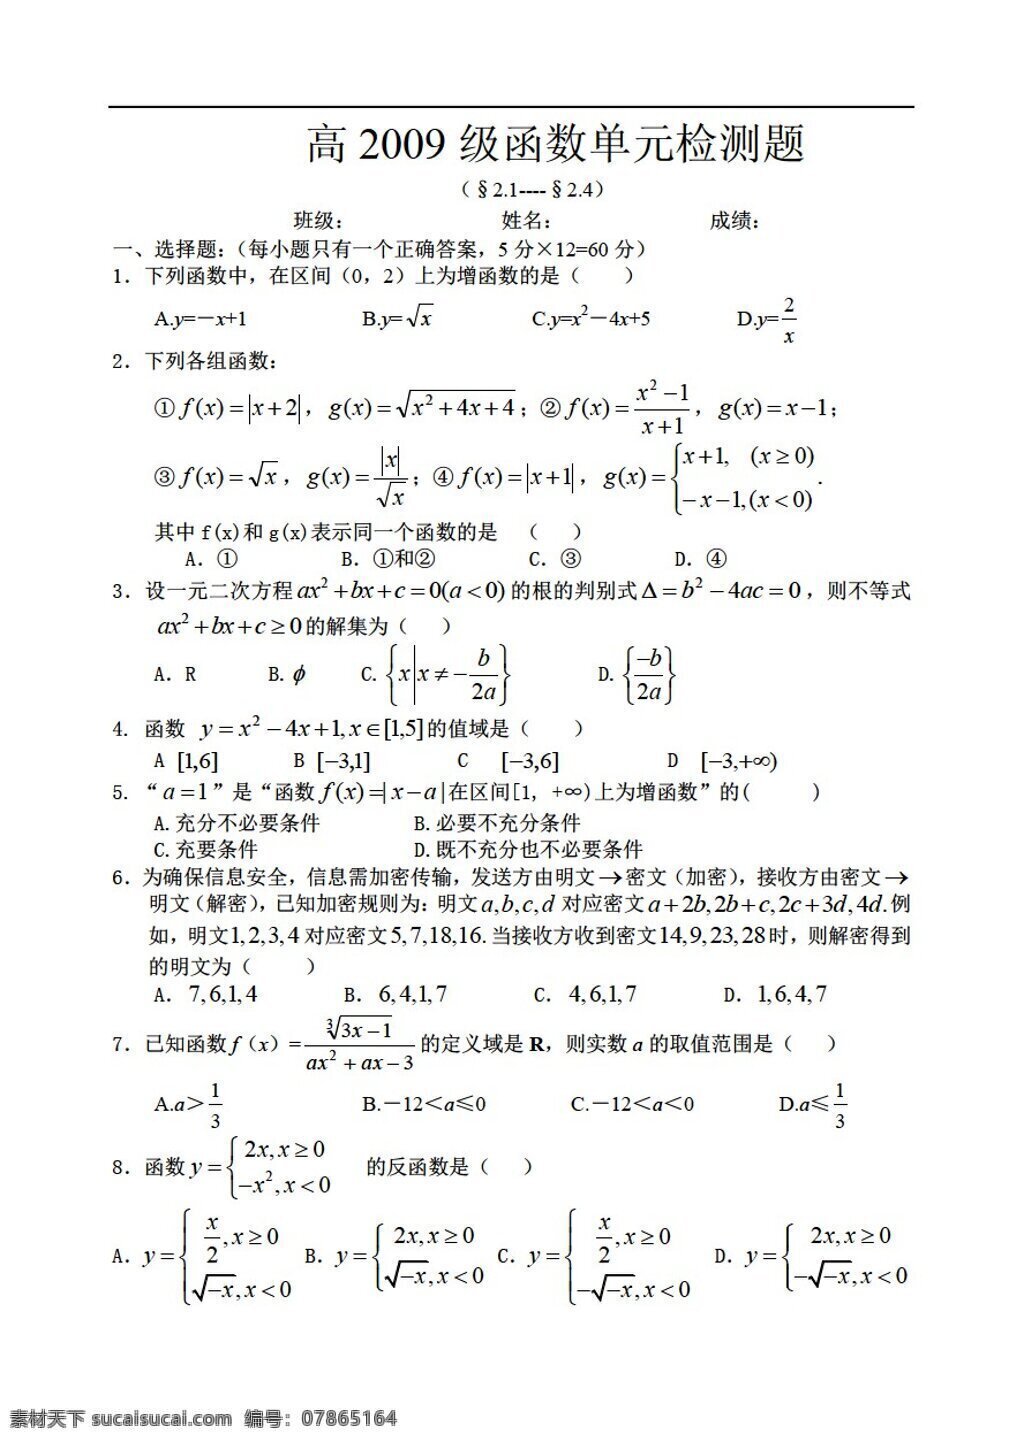 数学人教版旧 函数 单元 检测 题 月 重庆市 渝北 中学校 测试题 数学 人教版 第一册上 试卷